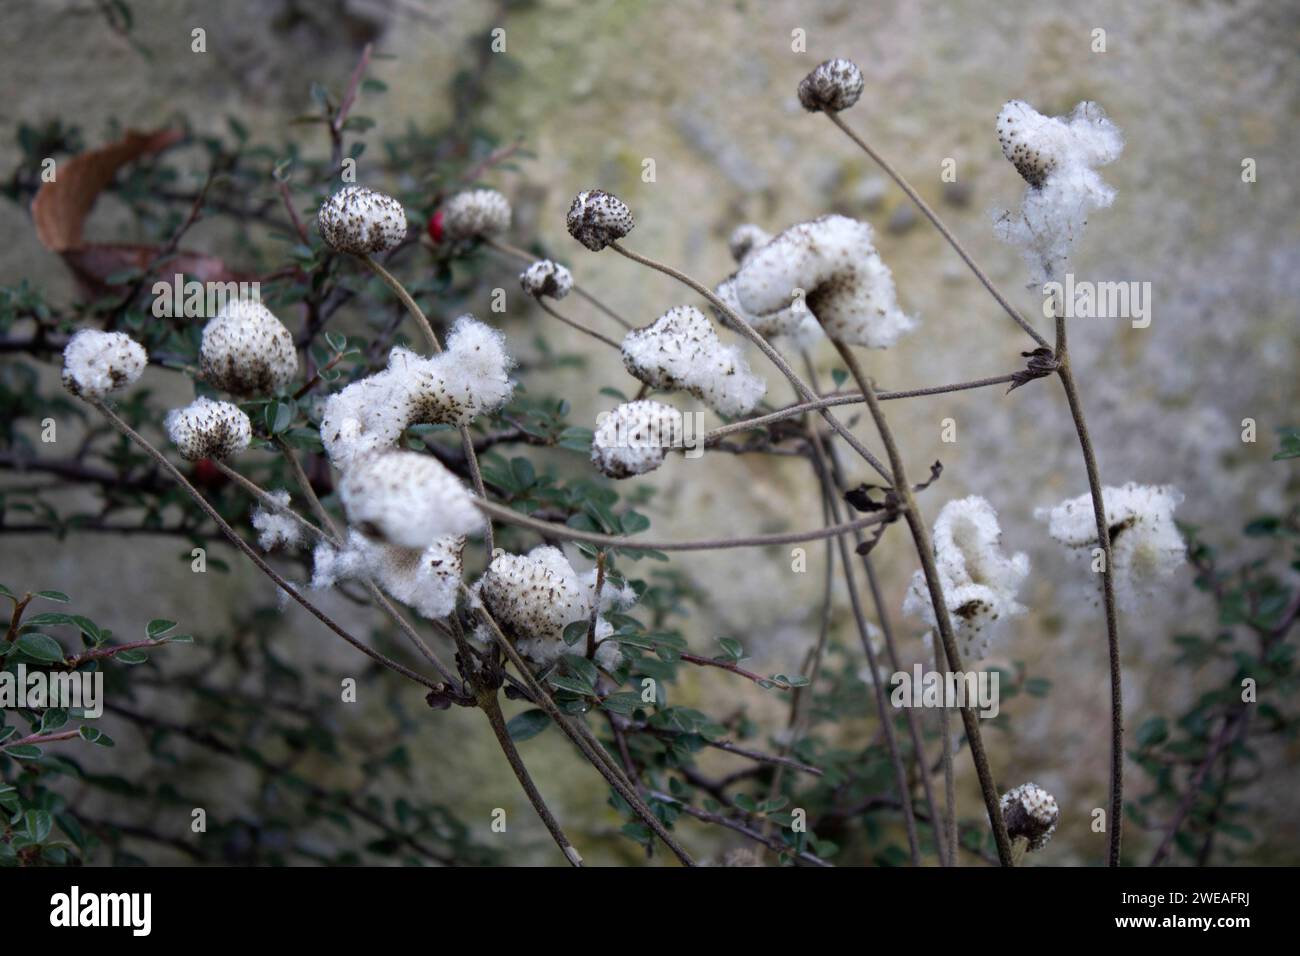 Weiße Fasern der Cotoneaster-Pflanze Oxford Botanic Garden, einer der ältesten wissenschaftlichen Gärten der Welt Oxford England Großbritannien Stockfoto